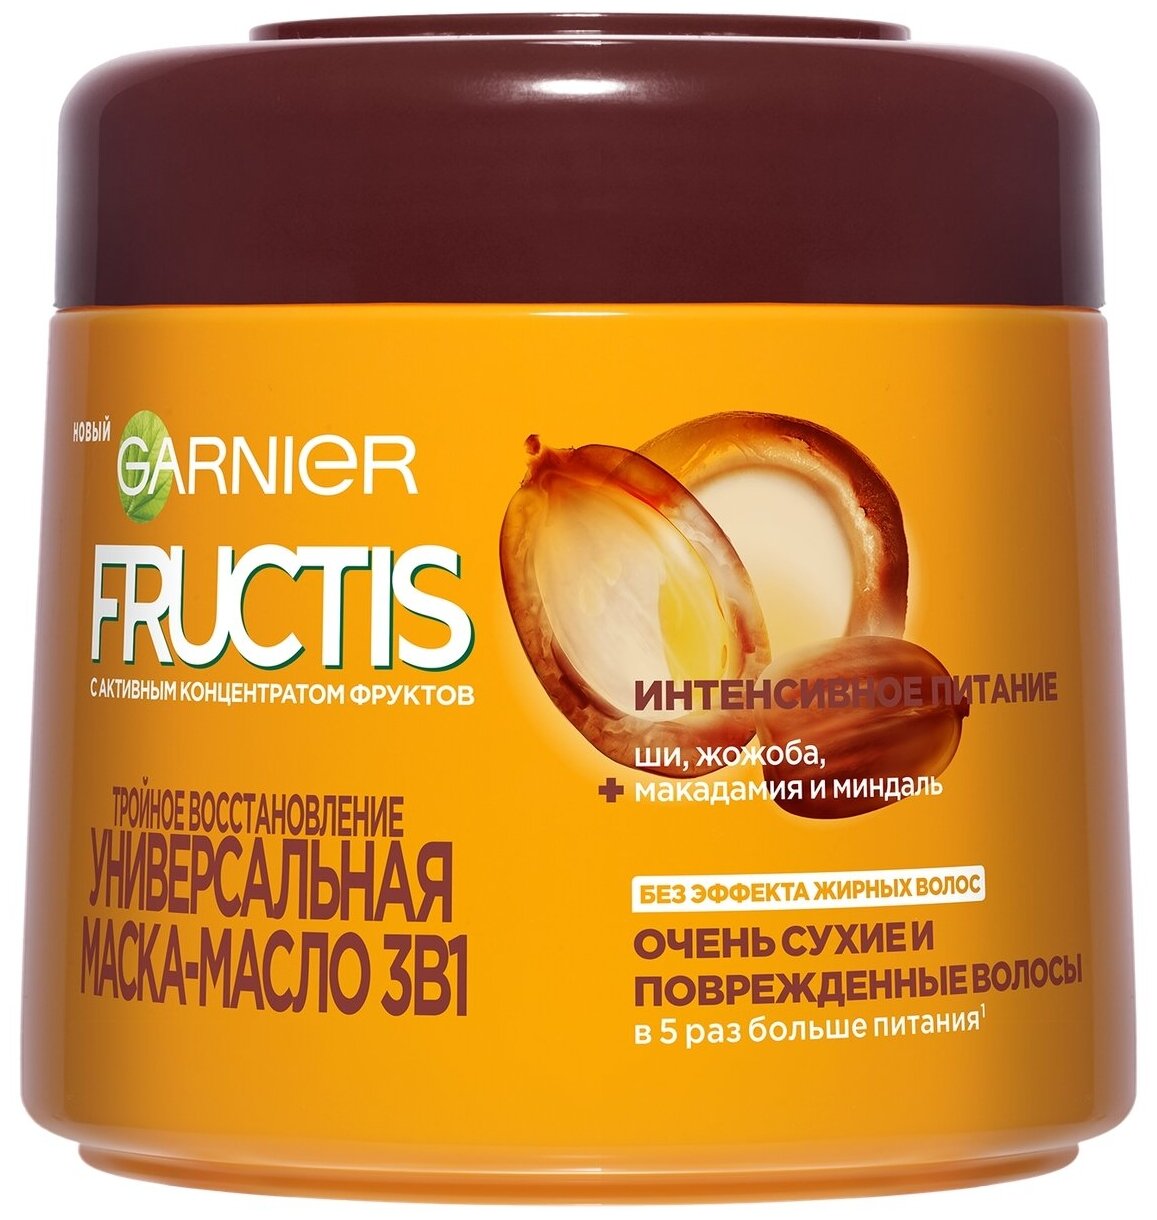 GARNIER Маска-масло для волос 3 в 1 Fructis Тройное восстановление, 300 г, 300 мл, банка